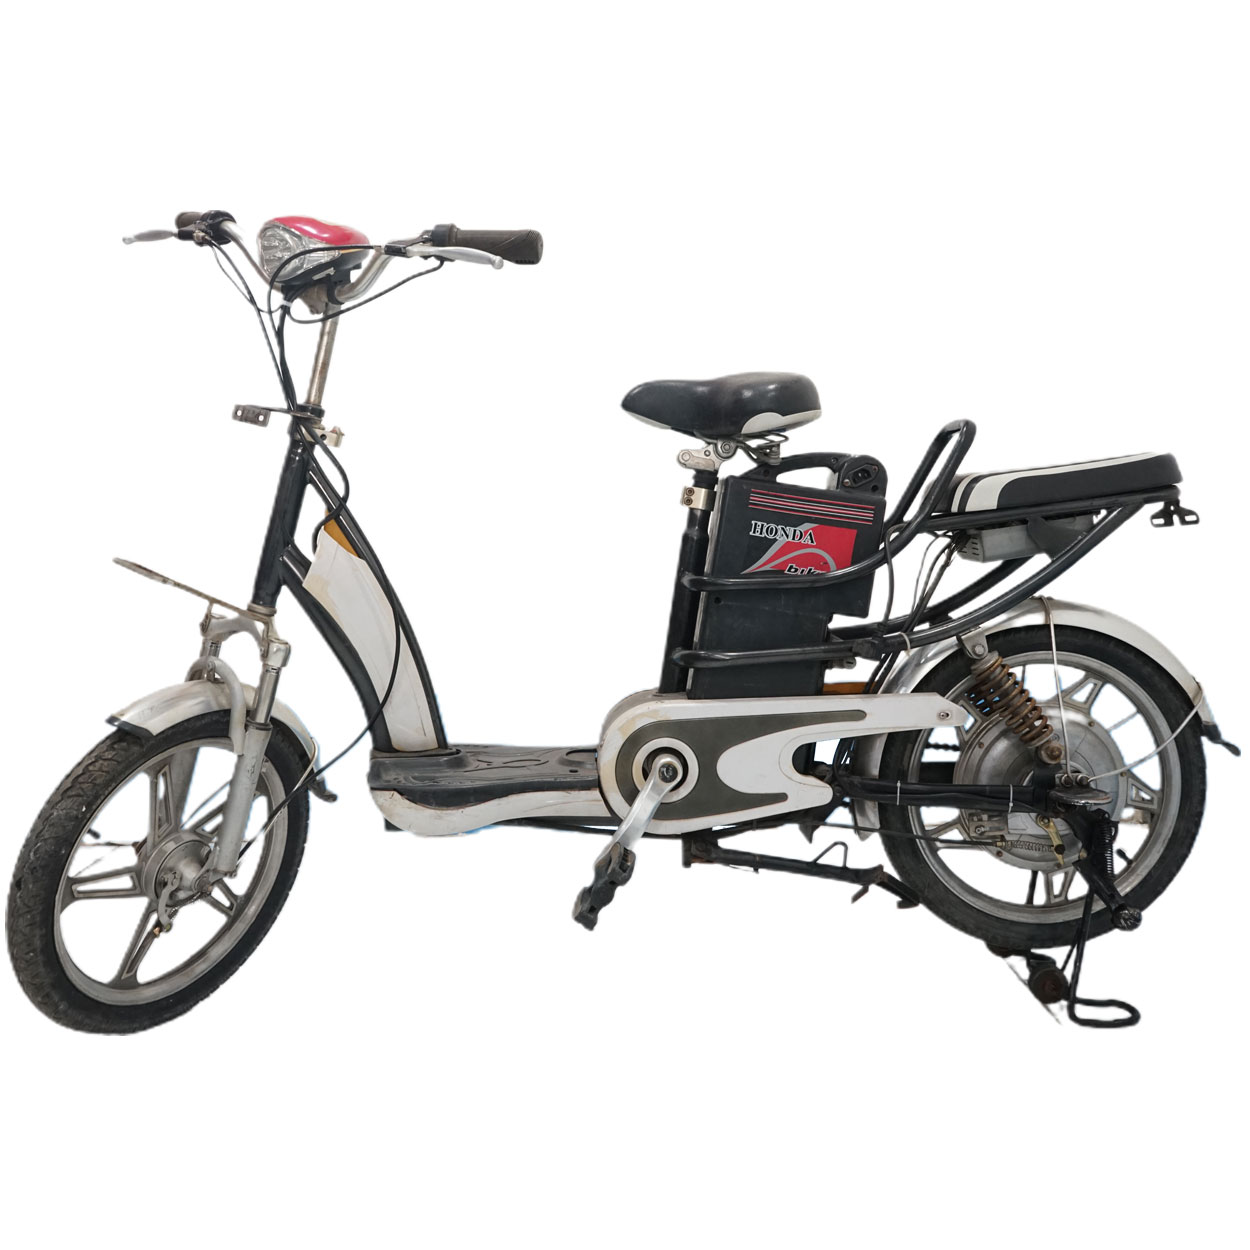 Xe đạp điện Honda Bike cũ giá rẻ